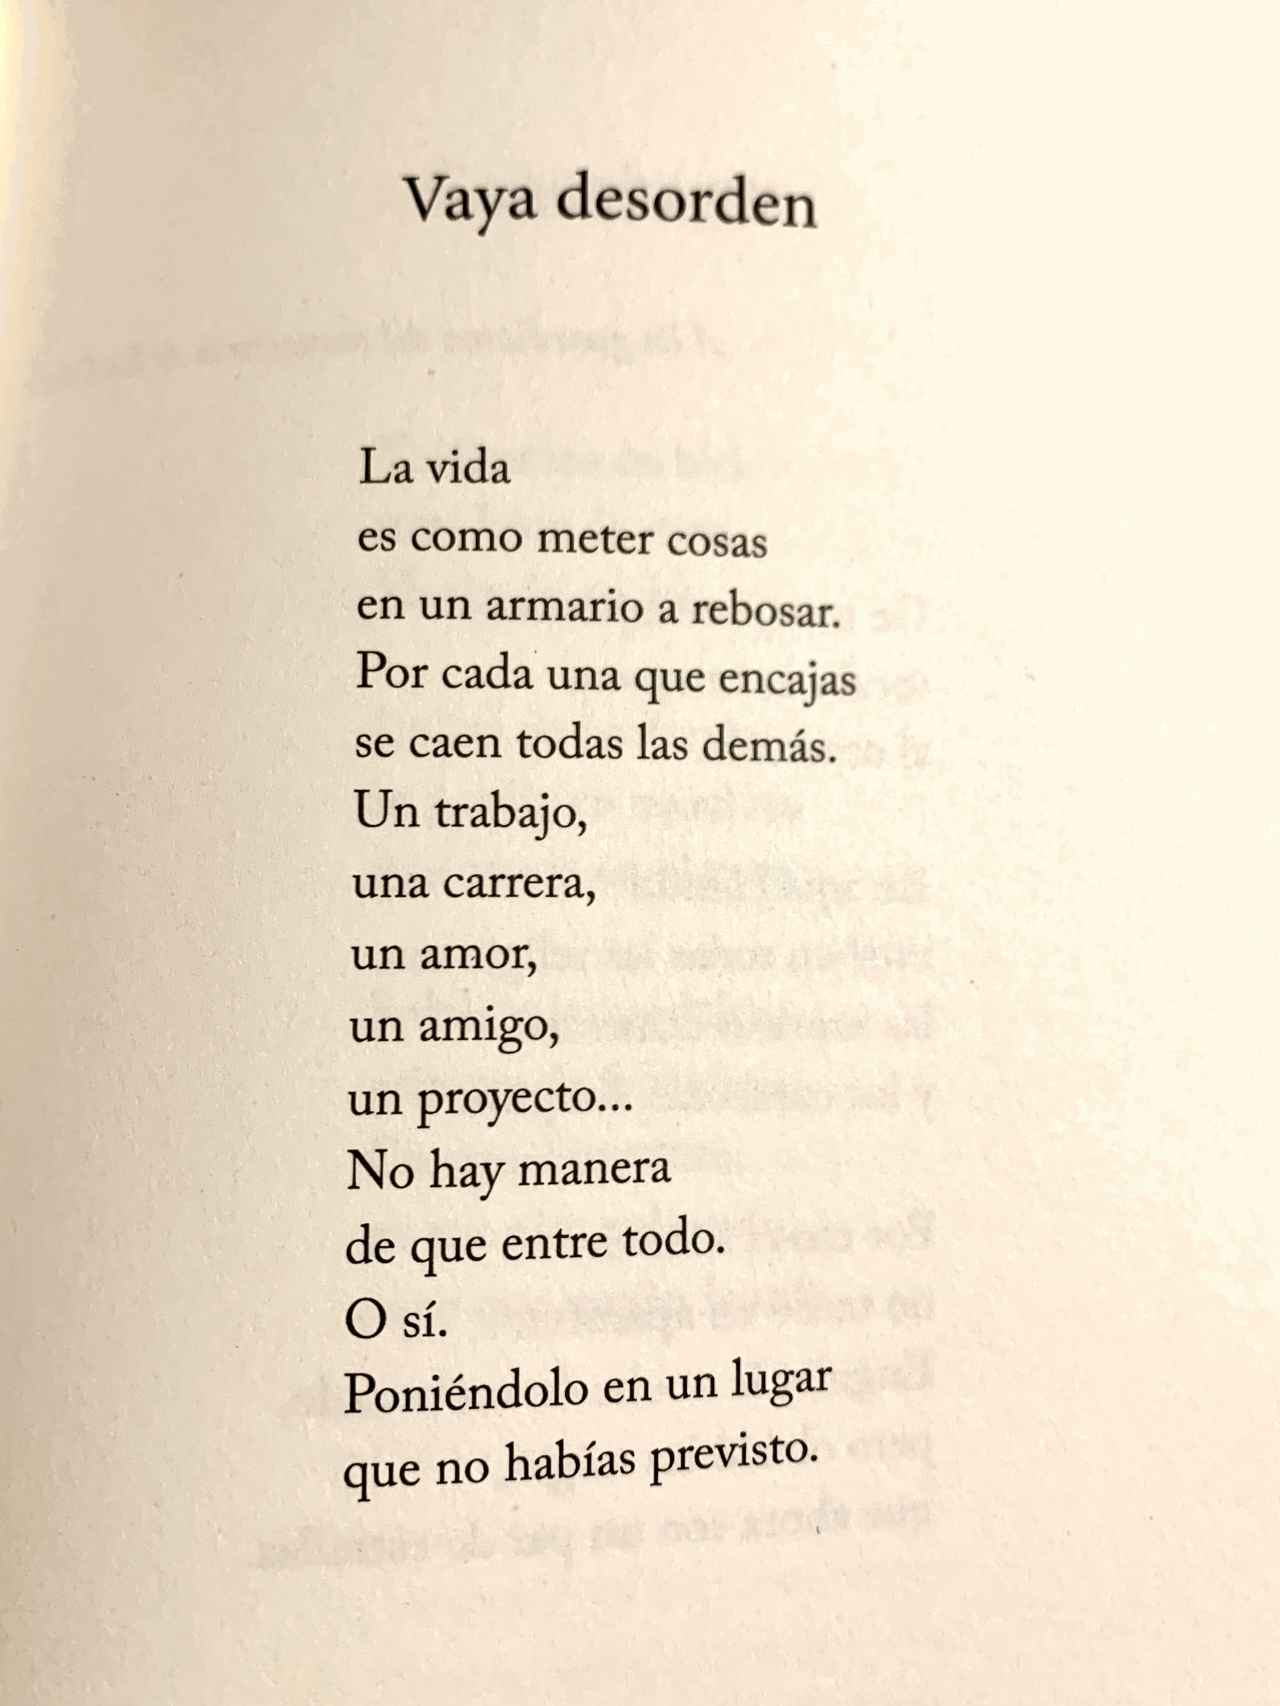 Vaya desorden, un poema de Daniel Ramírez.